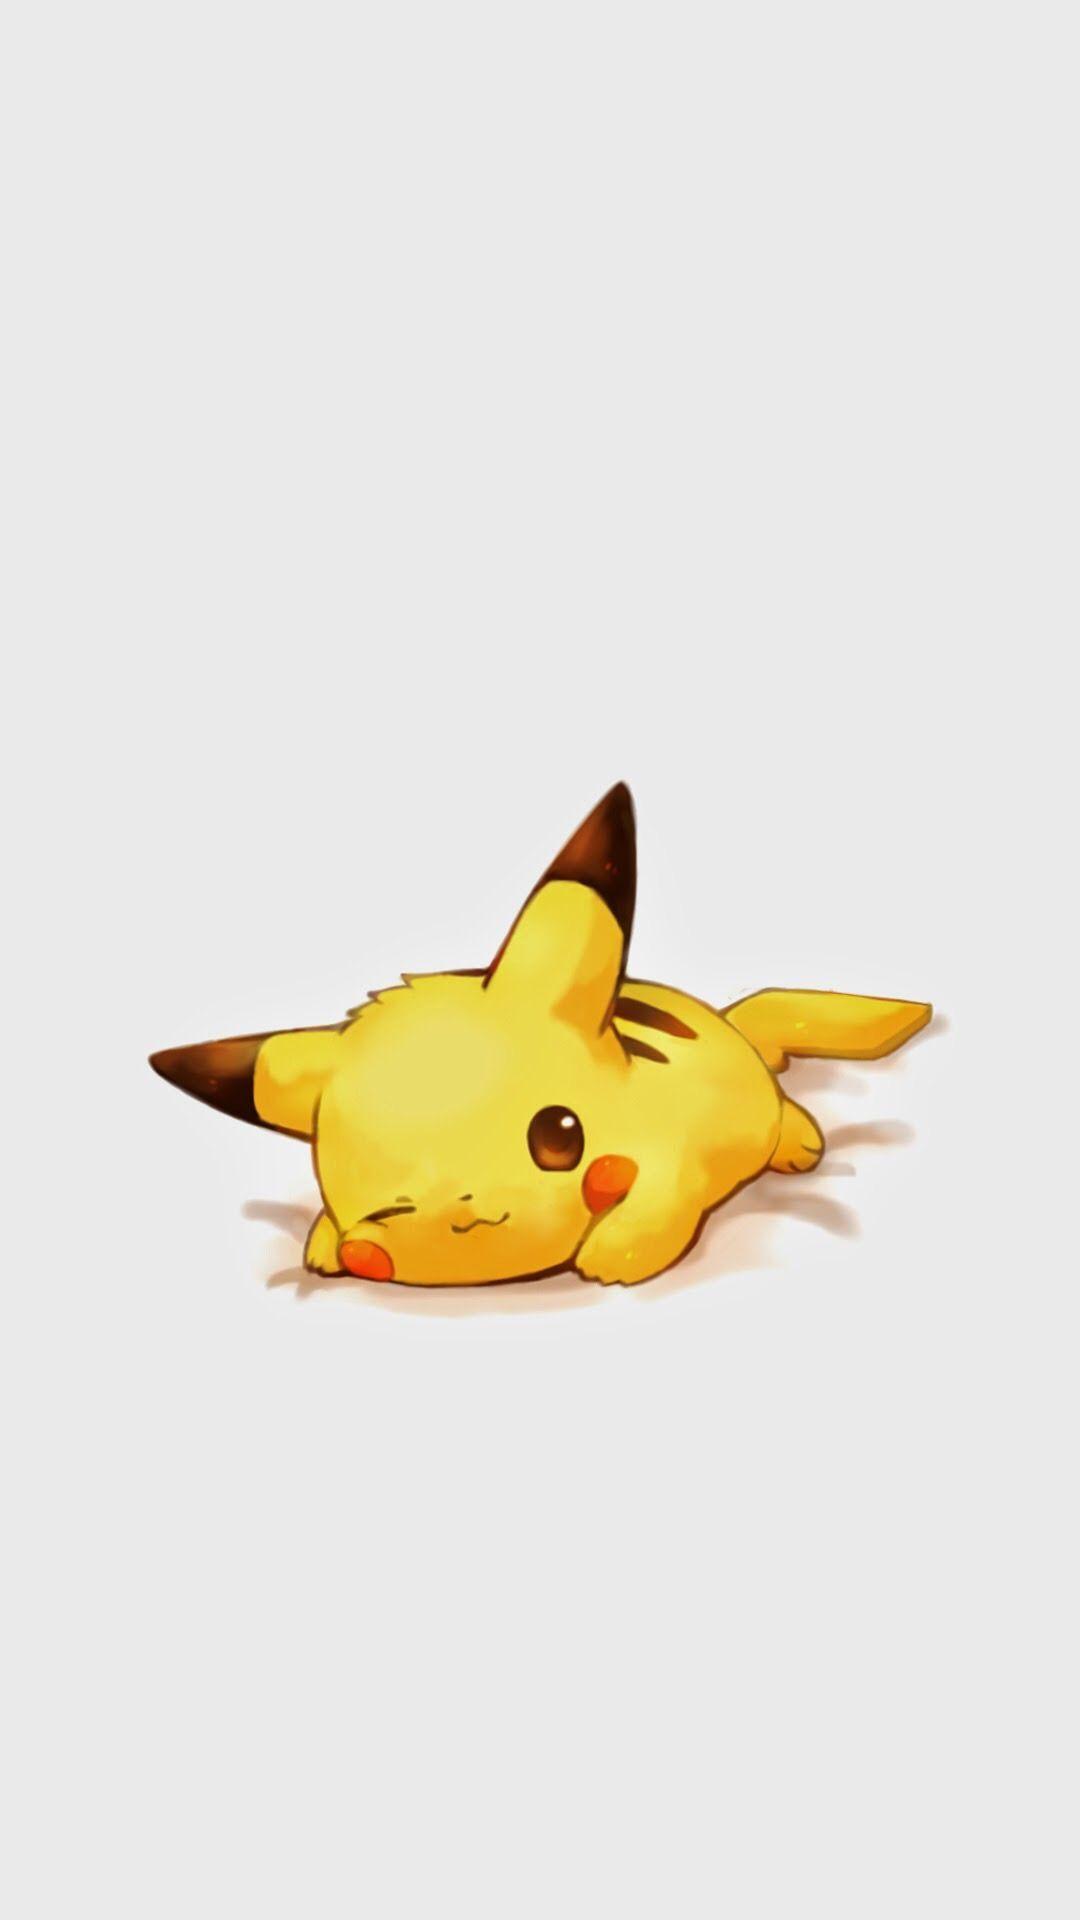 Hình ảnh Tap 1080x1920 để có thêm hình nền Pikachu dễ thương ngộ nghĩnh! Pikachu